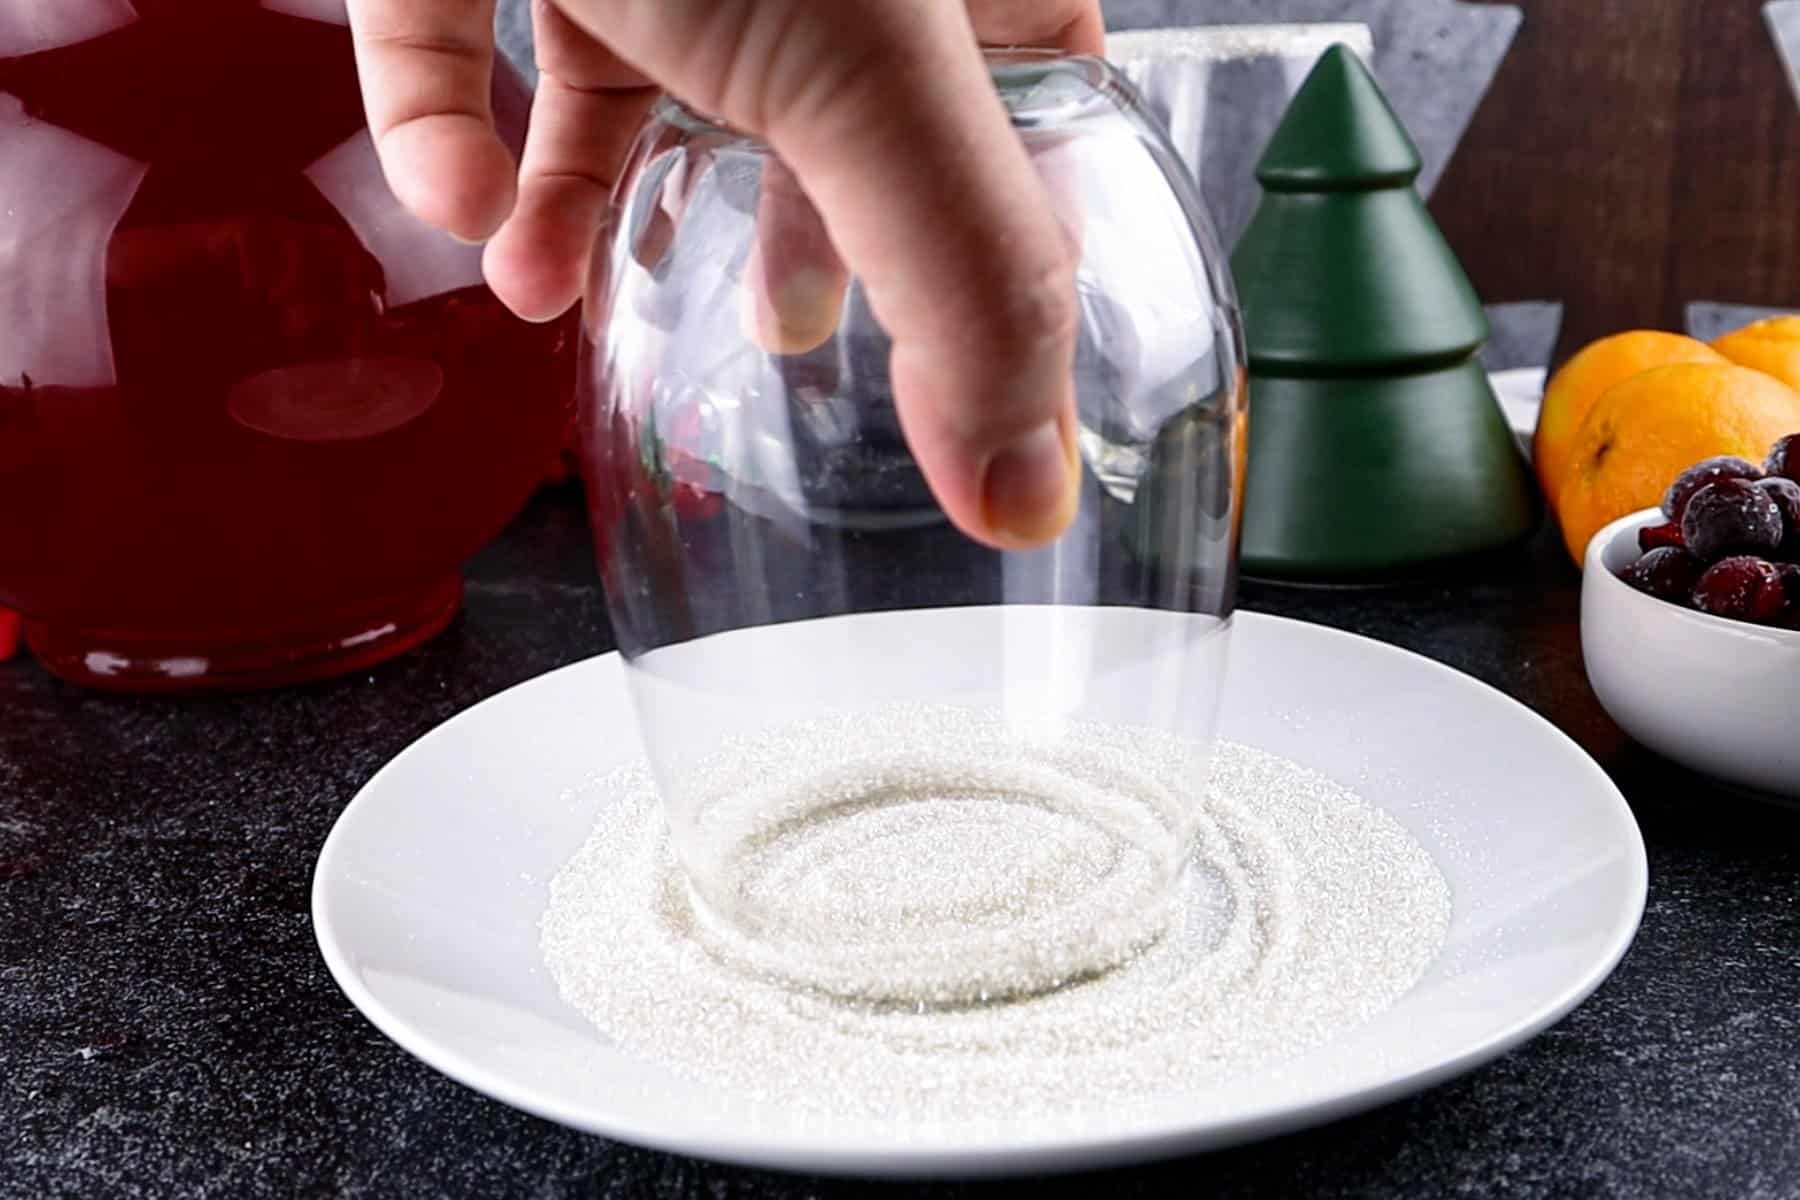 putting glass rim in sugar